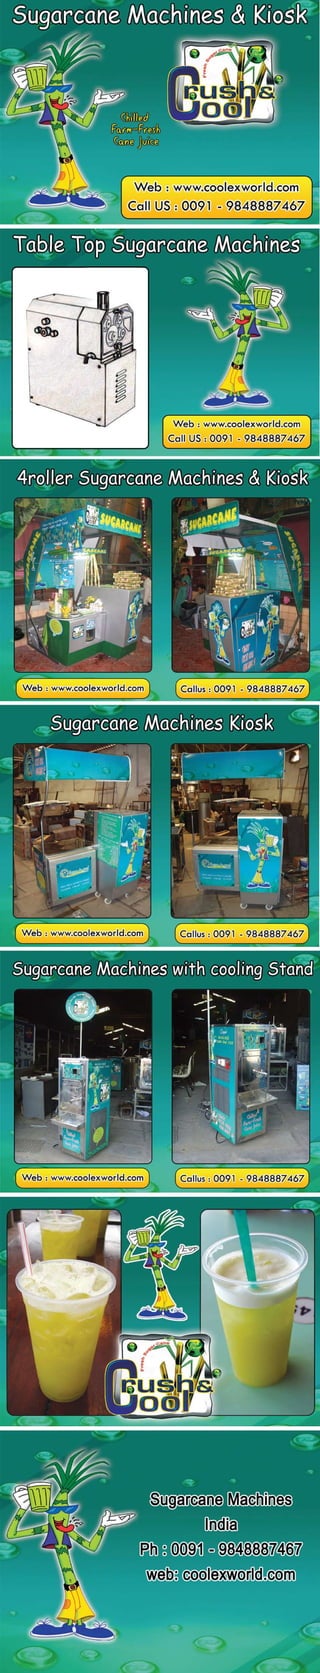 Sugarcane machine equipment